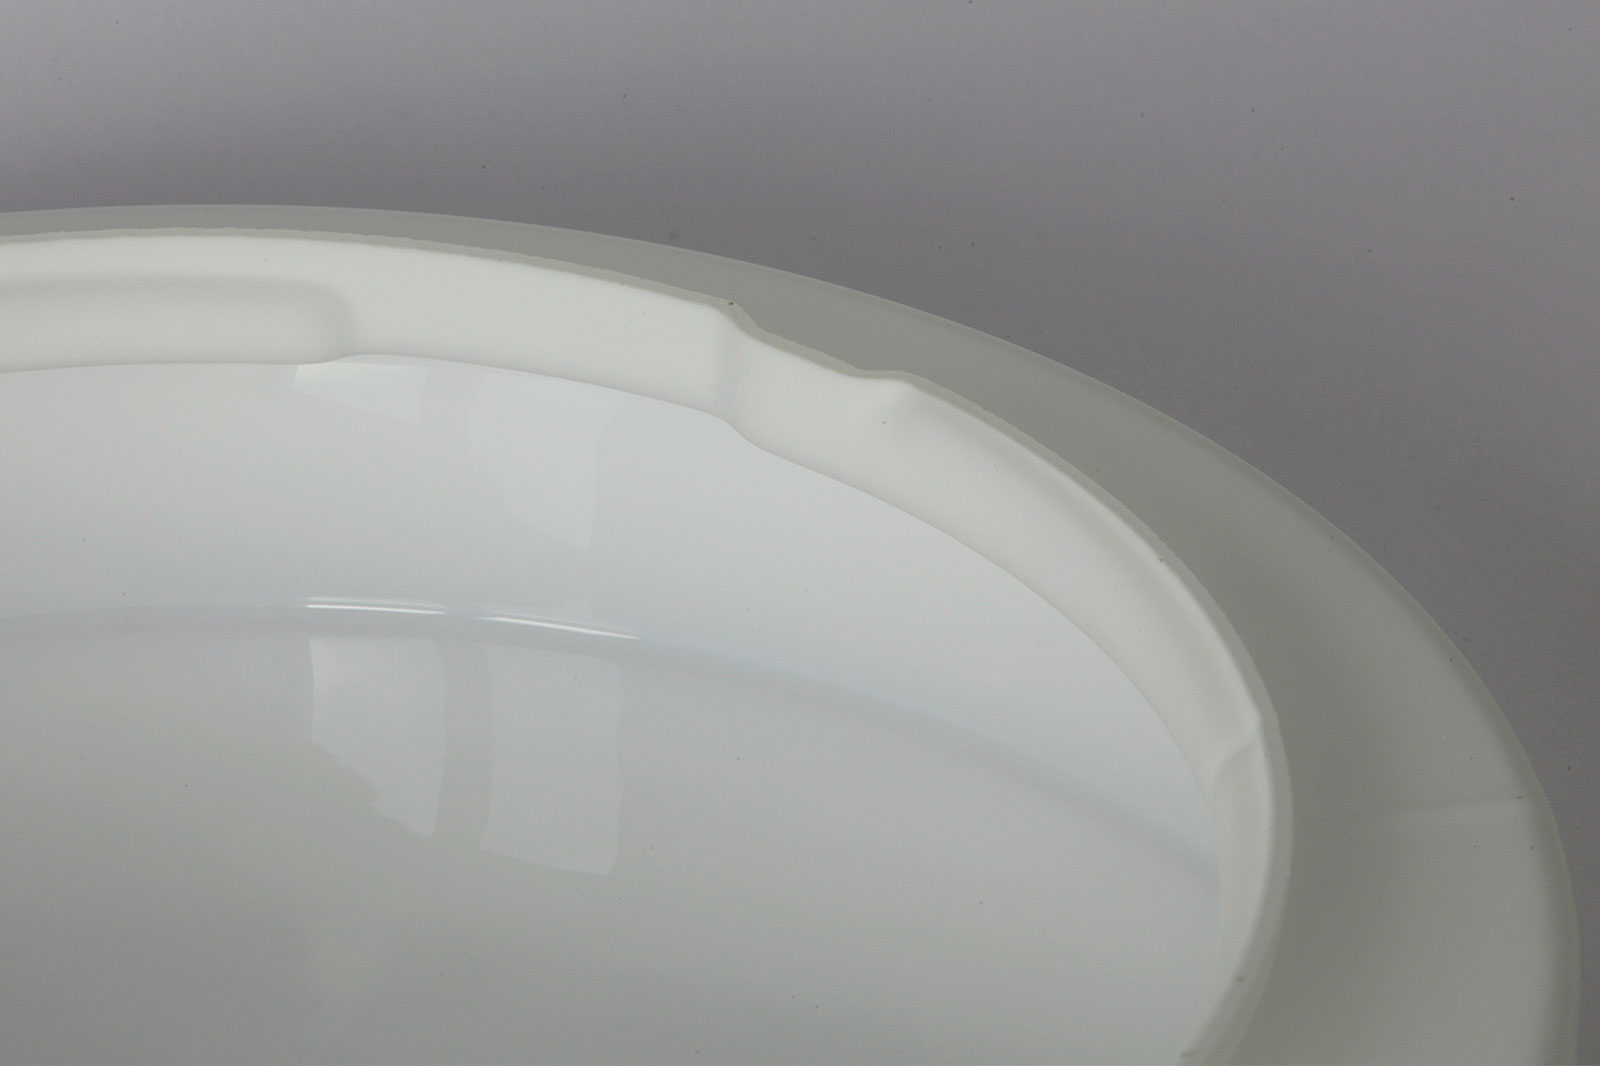 Ovale Opalglas-Deckenleuchte OVALA, 39 / 50 cm: Hochwertiges Triplex-Opalglas, außen samtig mattiert